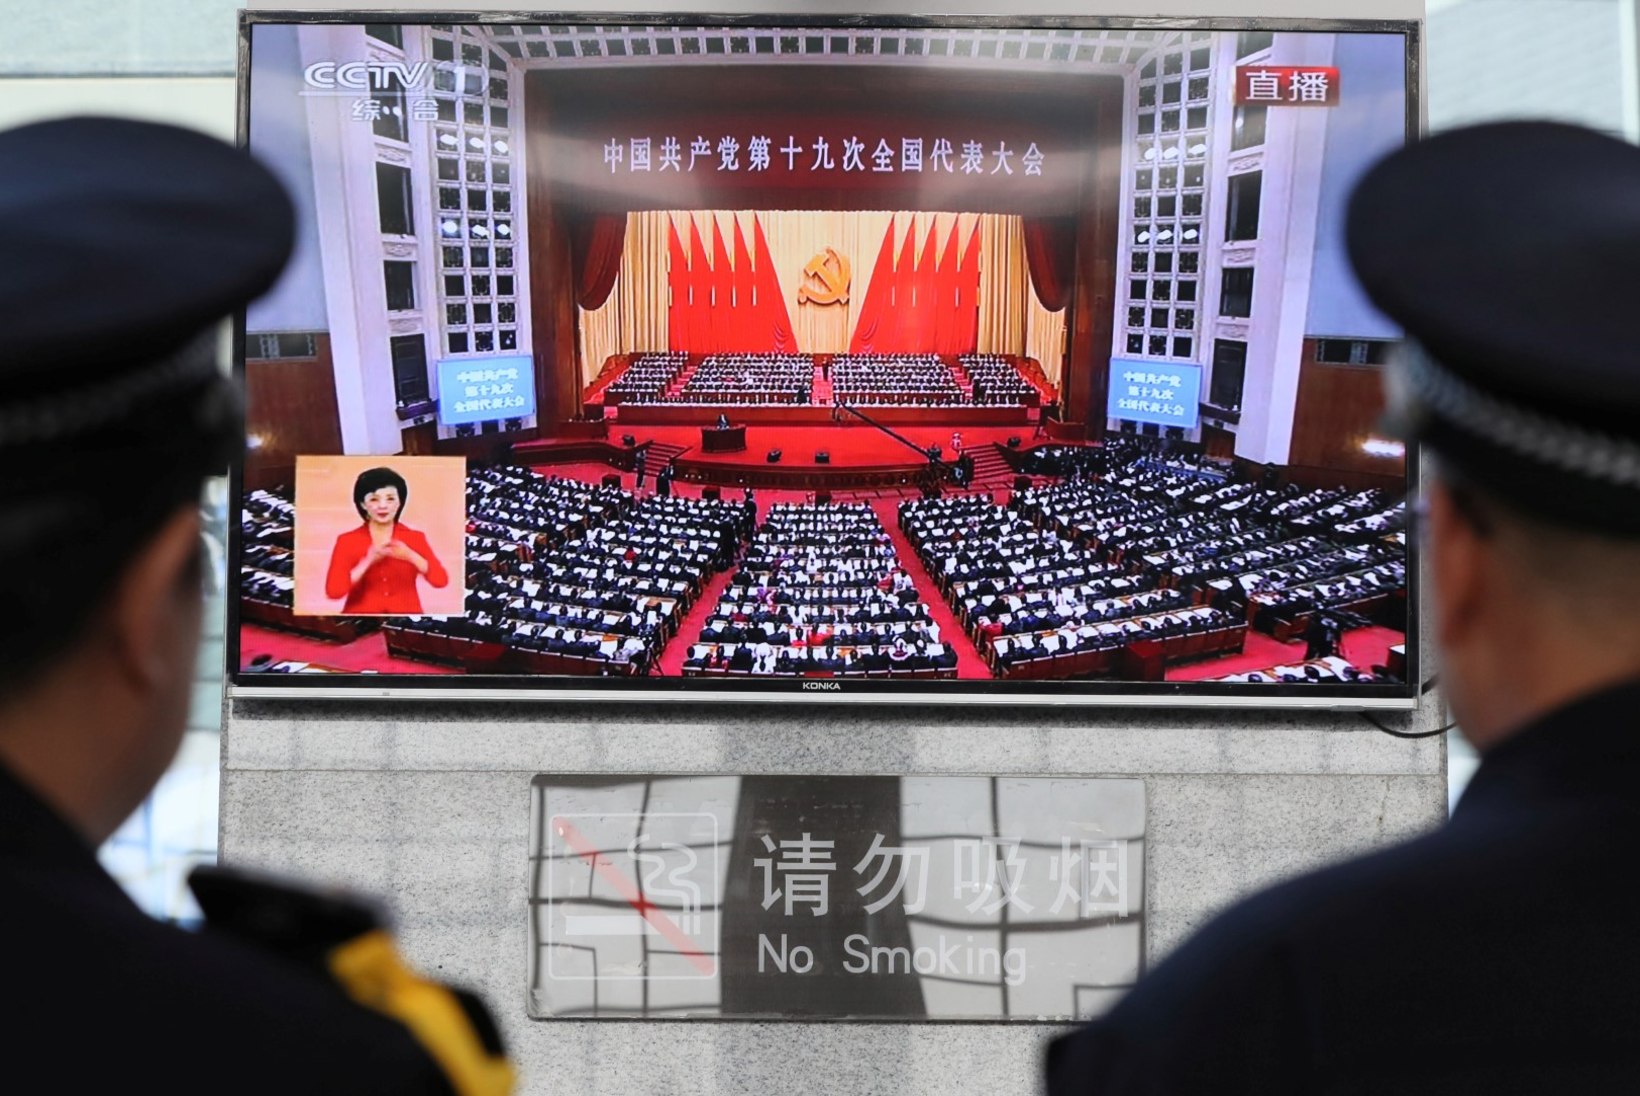 FOTOD | Poliitiline suursündmus Hiinas - algas kompartei kongress 